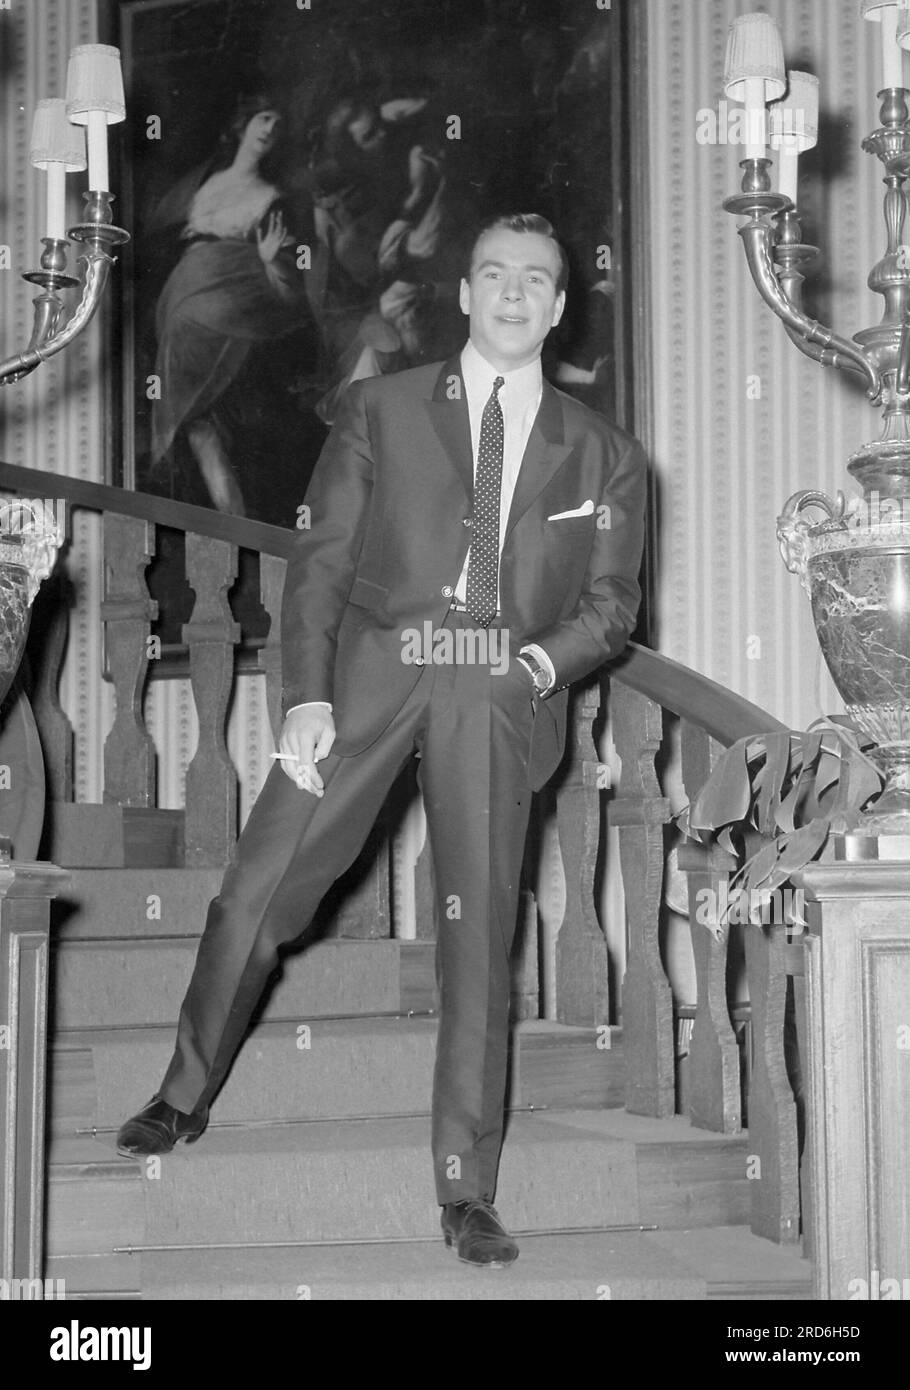 ARCHIVFOTO: Der Schauspieler Goetz George wäre am 23. Juli 2023 85 geworden, Goetz GEORGE (FRG), Schauspieler, ganze Figur, Ganzkörper, der beiläufig in einem Anzug auf einer Treppe mit einer Zigarette in der Hand steht; während der Dreharbeiten des Spielfilms "Warteraum bis ins Jenseits"; Schwarzweißfoto, Porträtformat, am 31. Januar 1964; ?SVEN SIMON, Princess-Luise-Str.41#45479 Mülheim/Ruhr#Tel.0208/9413250#Fax 0208/9413260#Account 244 293 433 P ostbank E ssen BLZ 360 100 43#www.SvenSimon.net#e-mail:SvenSimon@t-online.de. Stockfoto